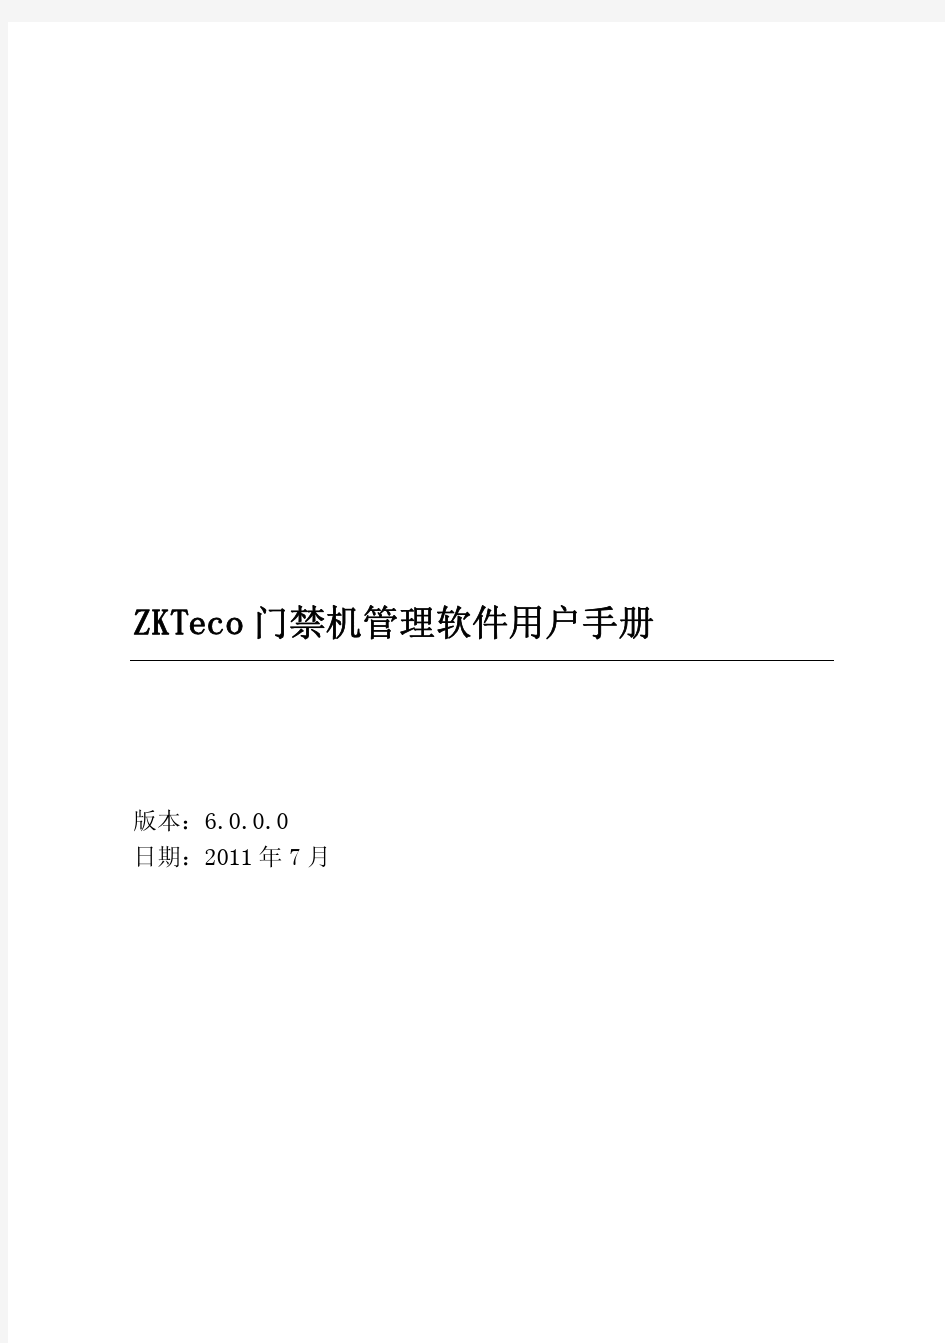 ZKTeco门禁机管理软件用户手册 V6.0.0.0